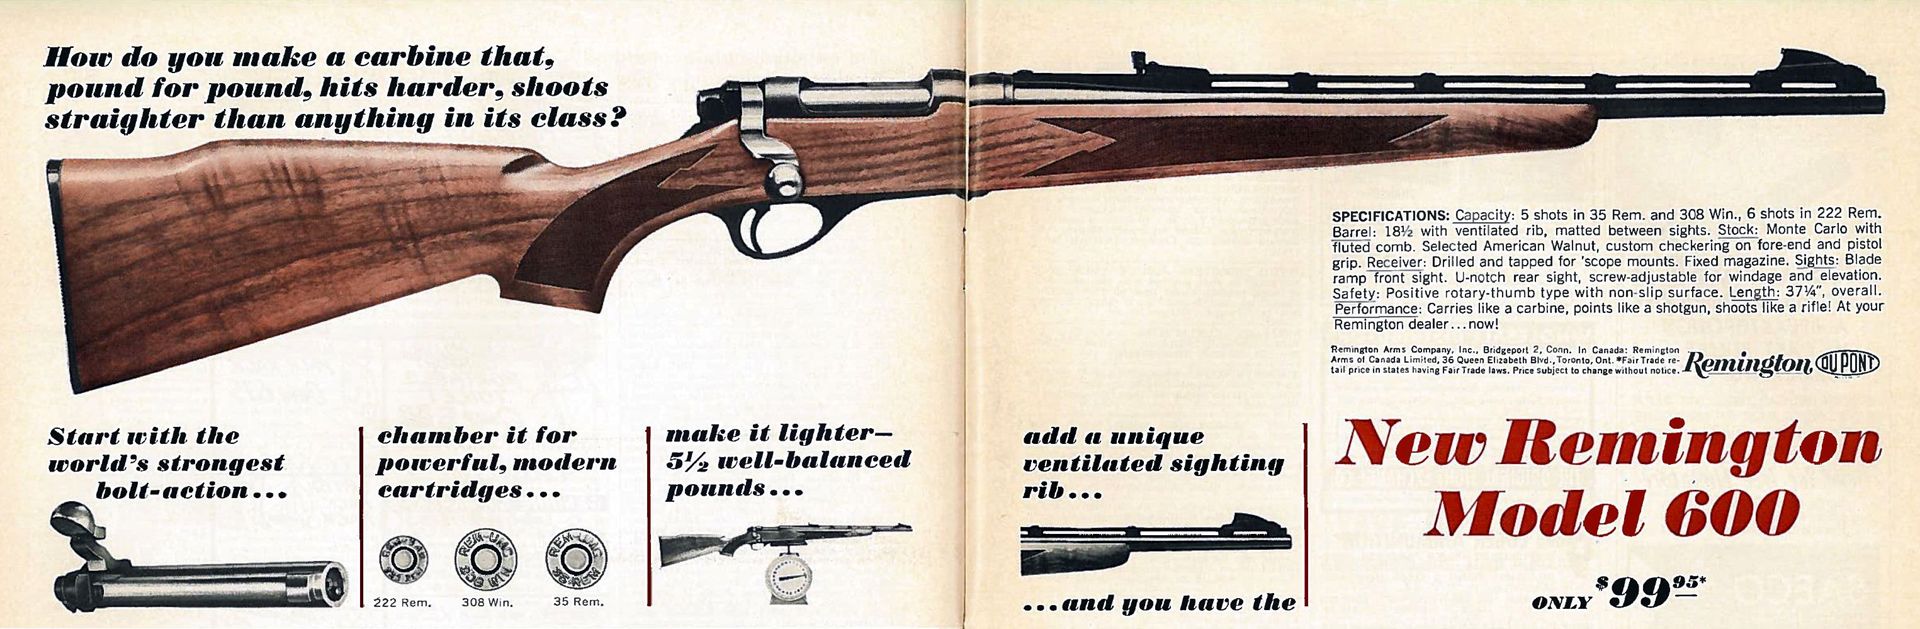 Remington 600 mohawk serial numbers